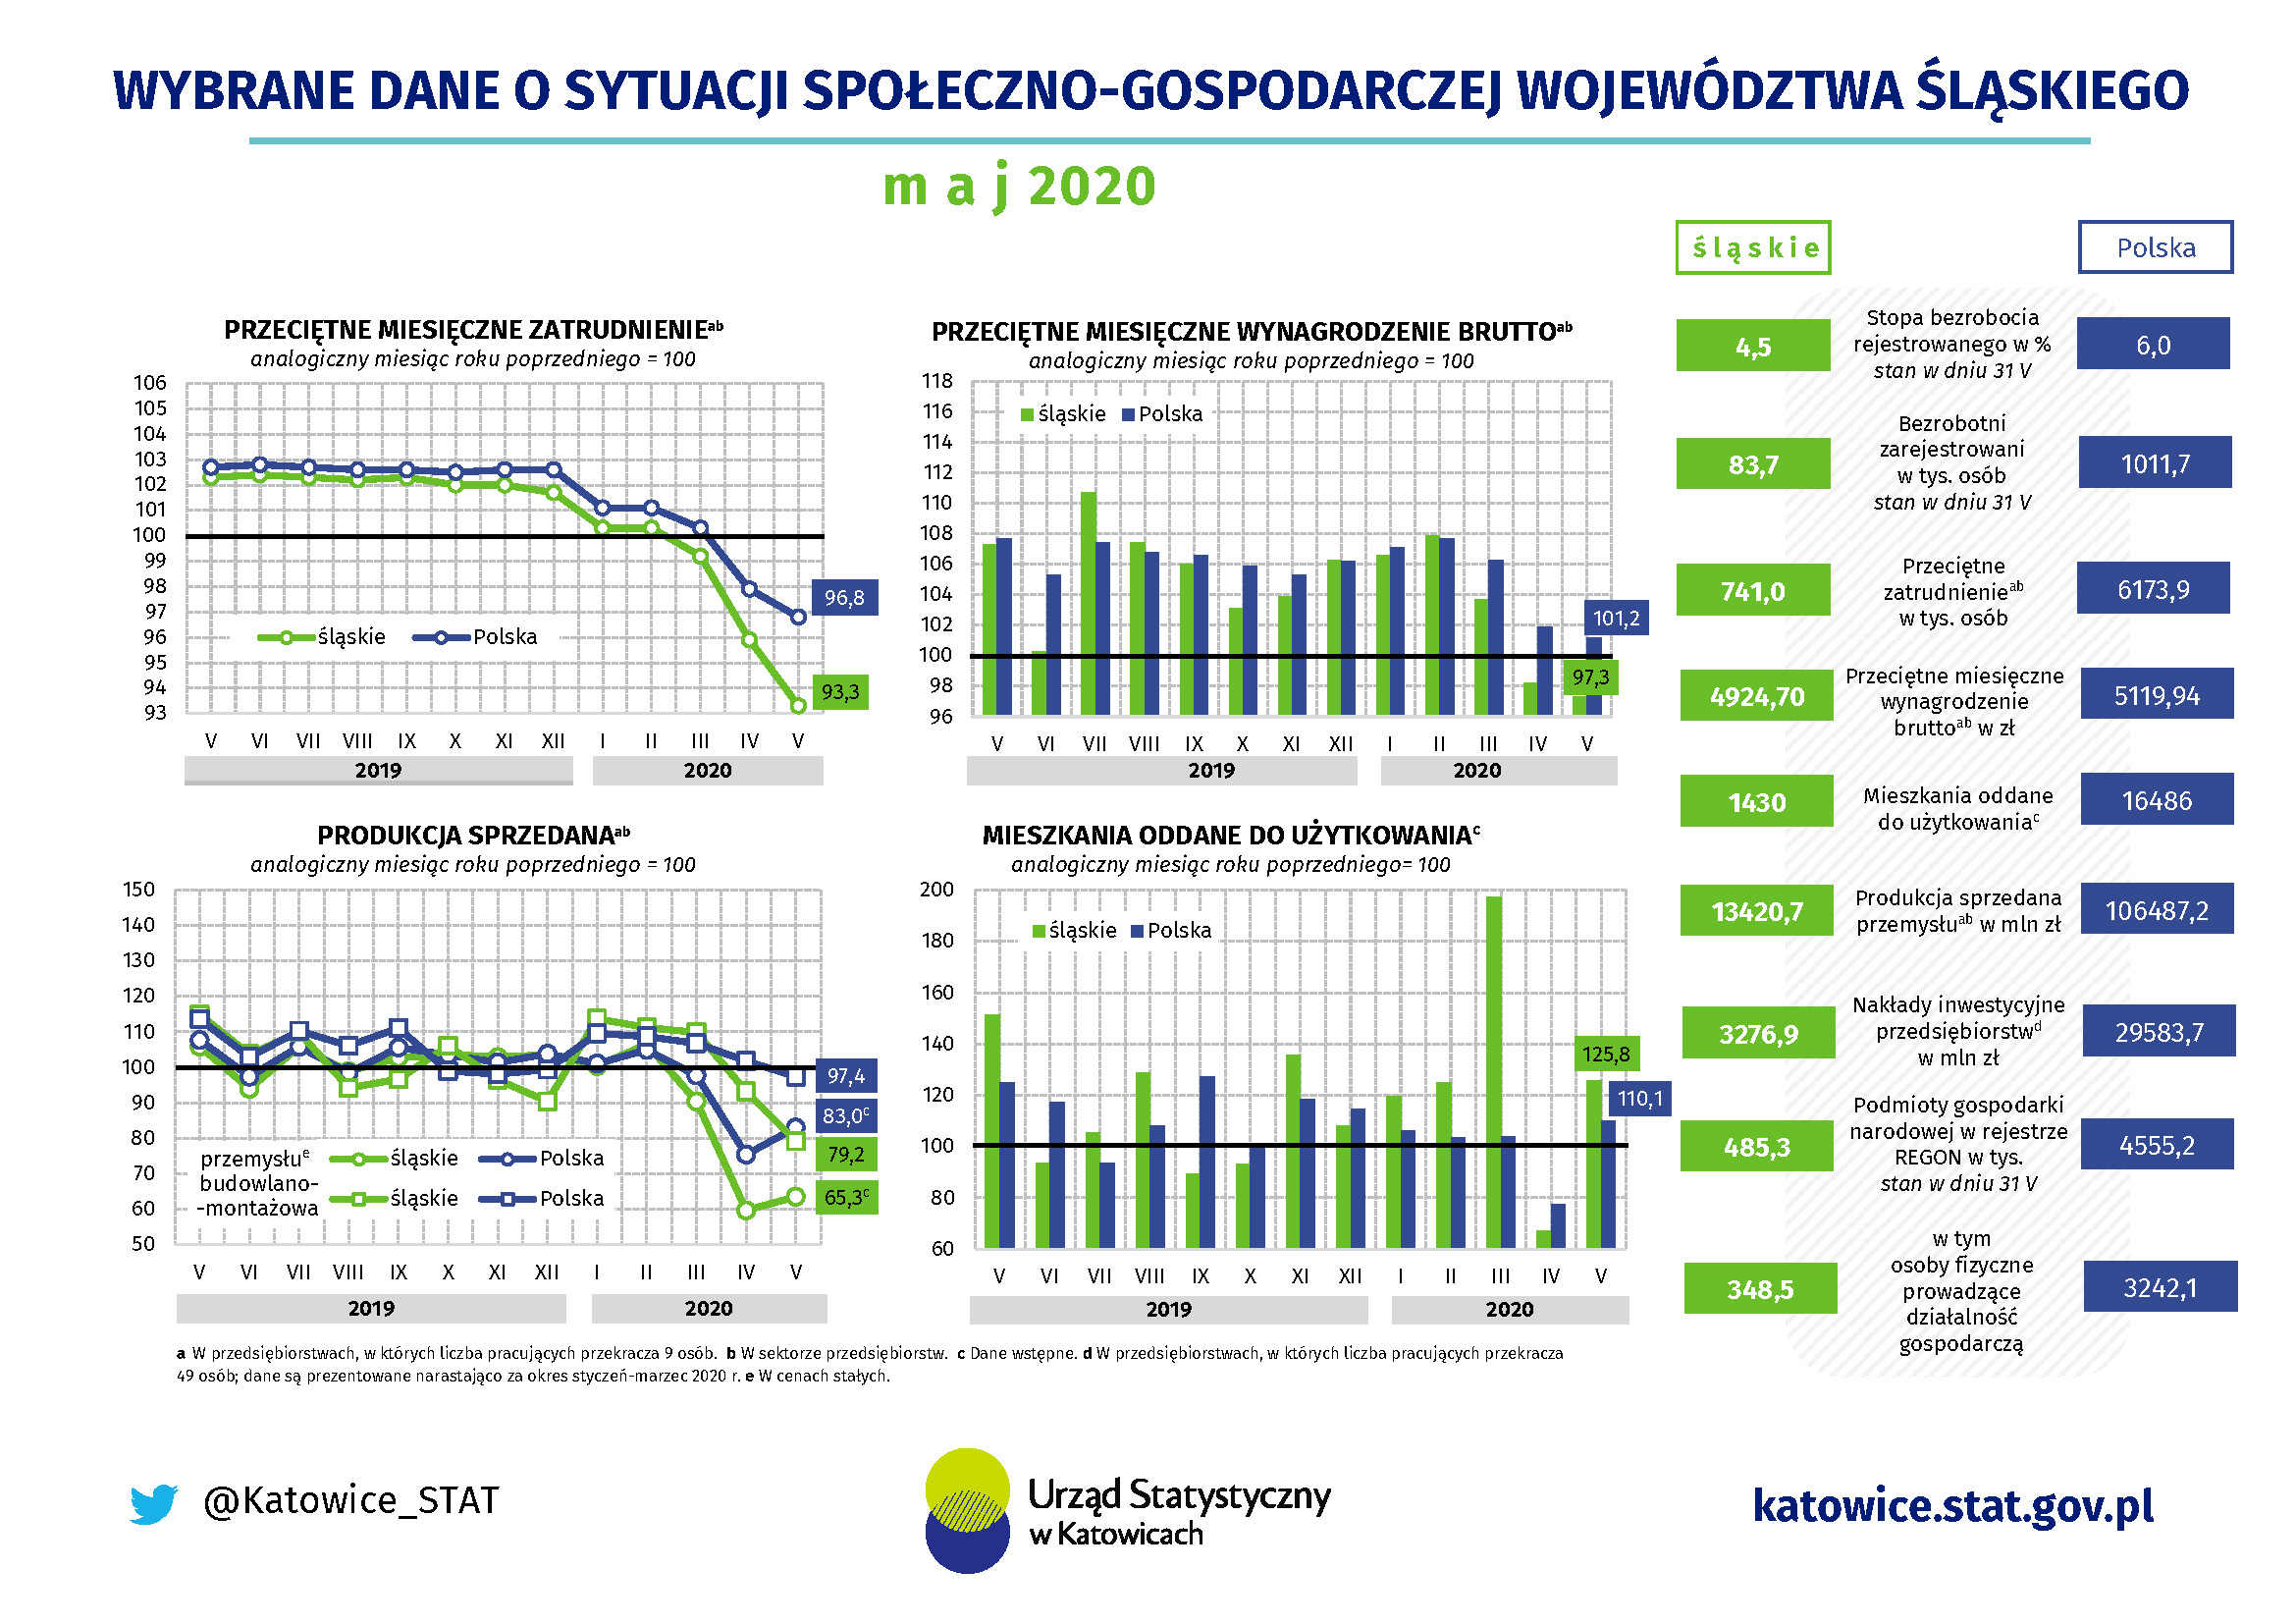 Infografika - Wybrane dane o sytuacji społeczno-gospodarczej województwa śląskiego w maju 2020 r.